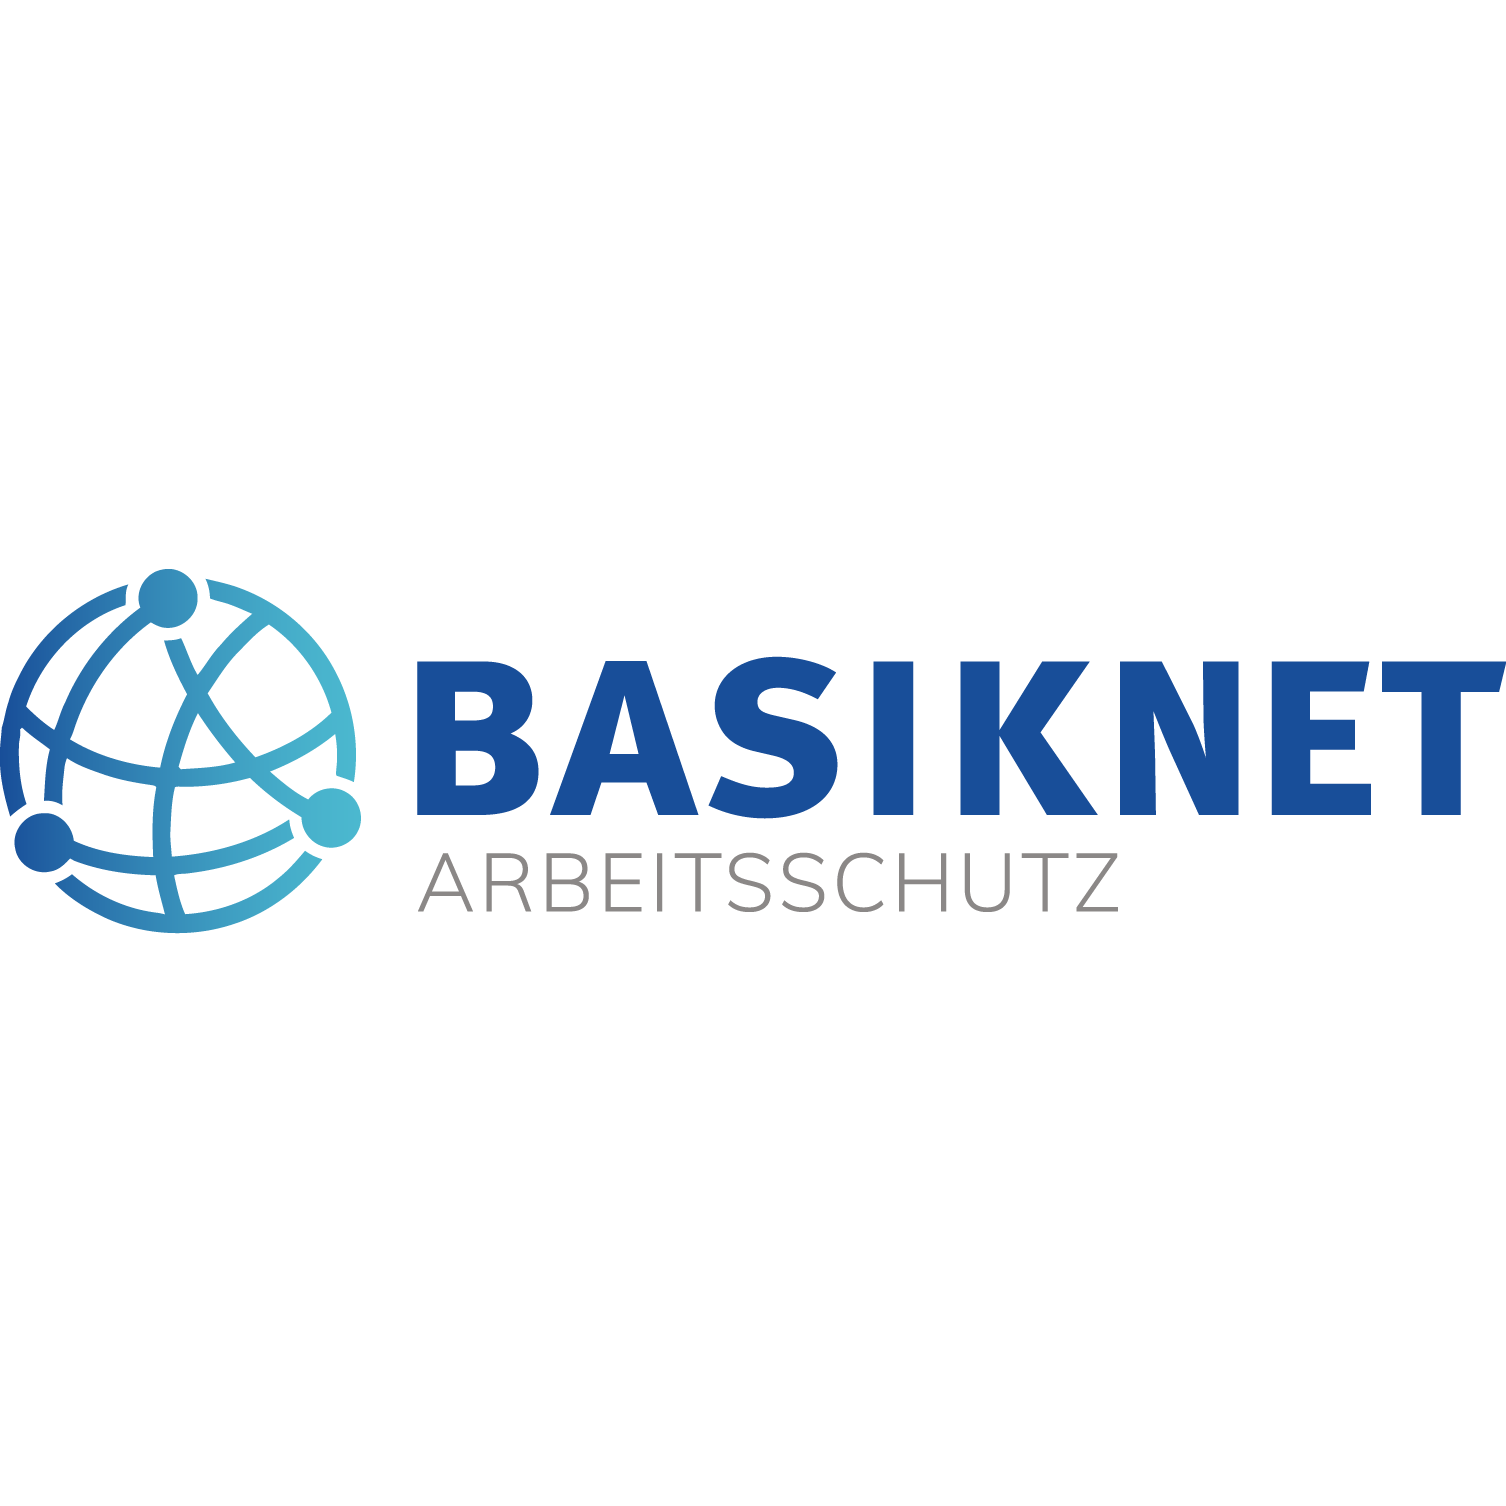 BASIKNET Gesellschaft für Arbeitsschutz mbH in Berlin